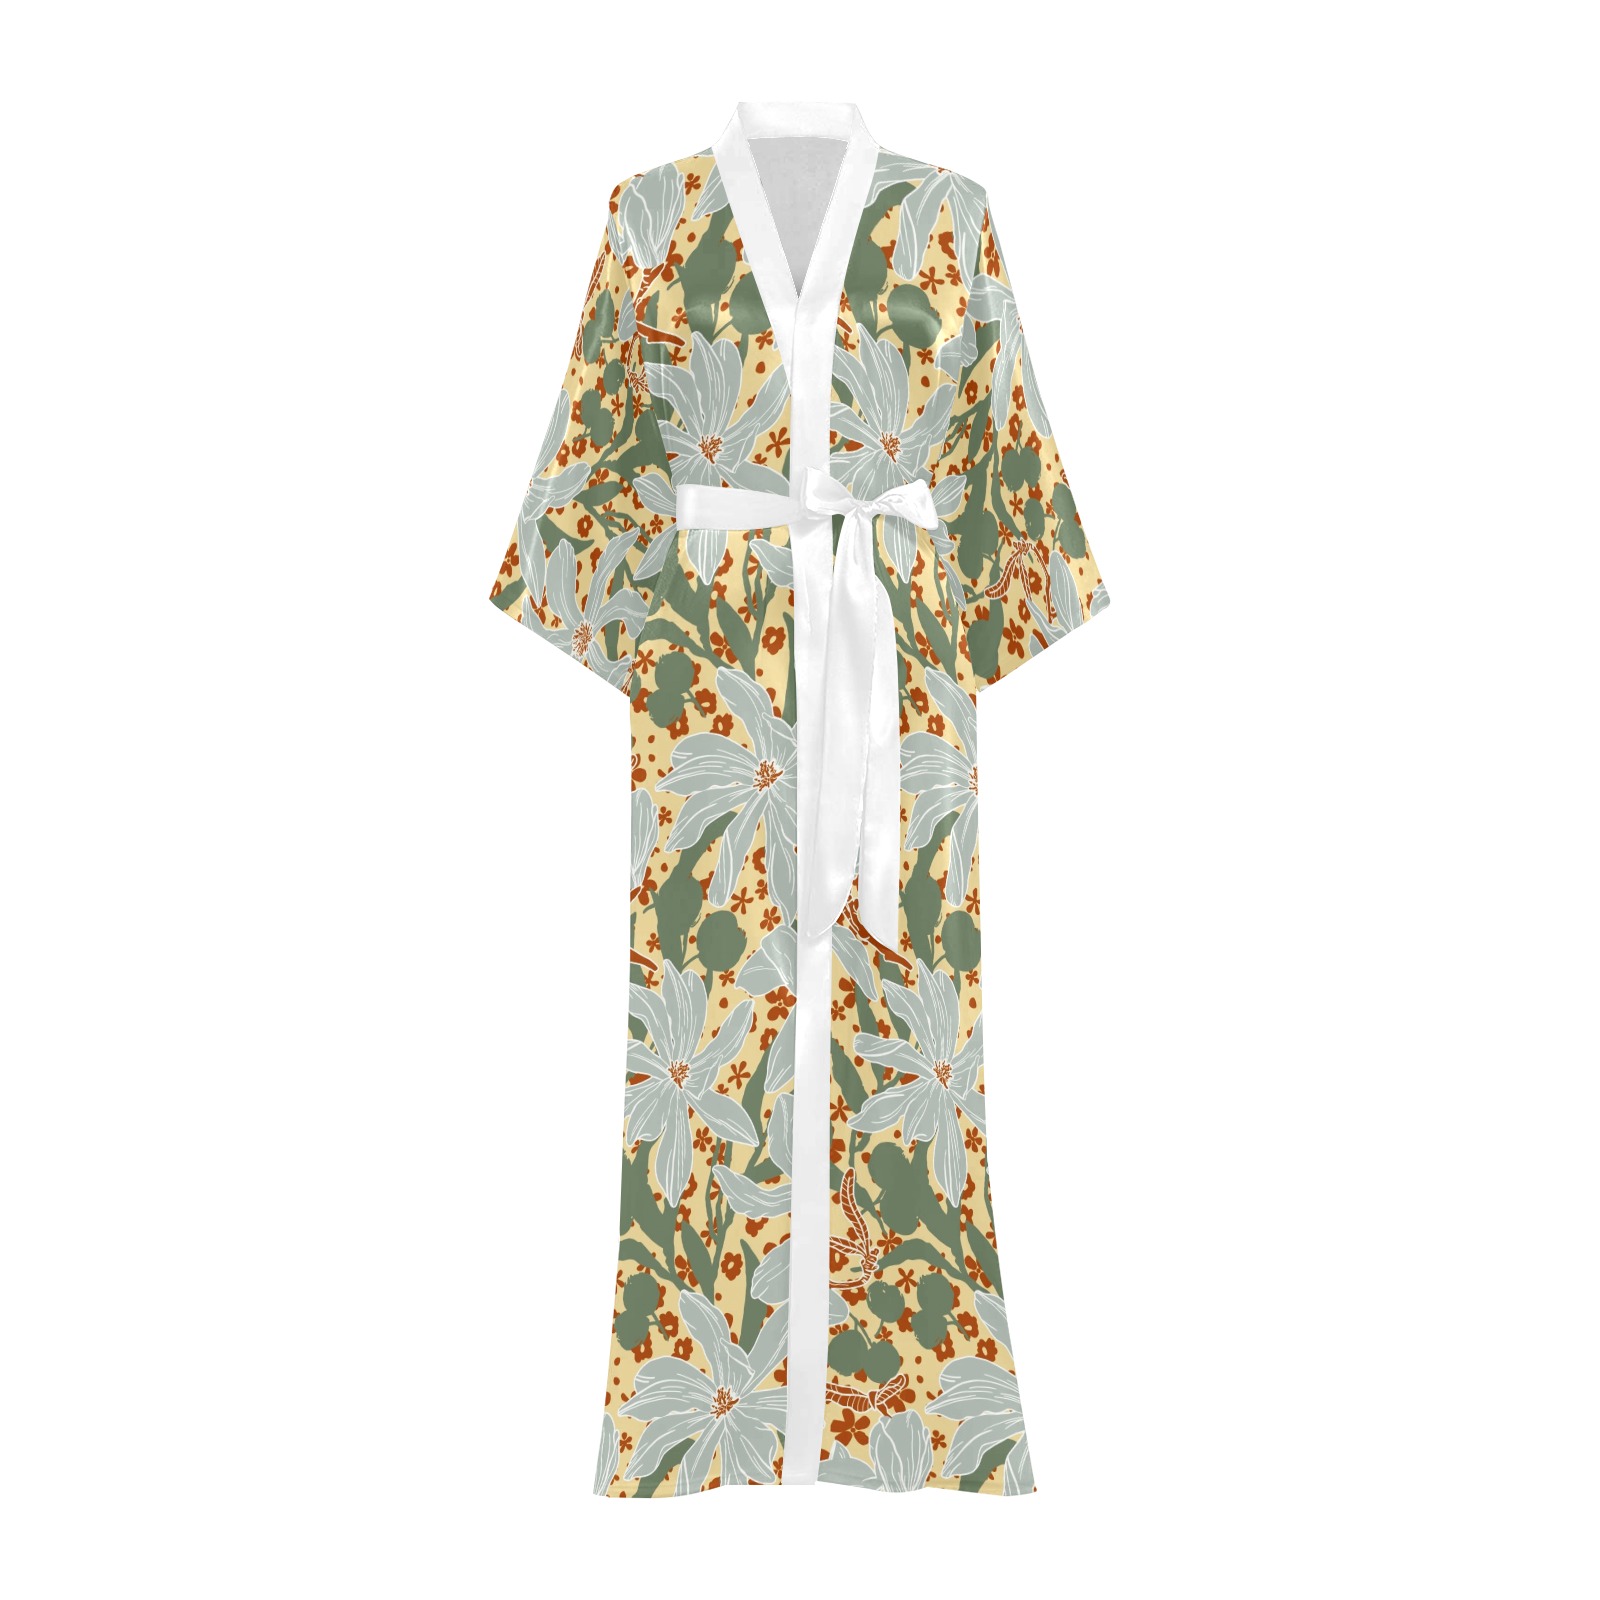 Garden tropical lush 45D Long Kimono Robe